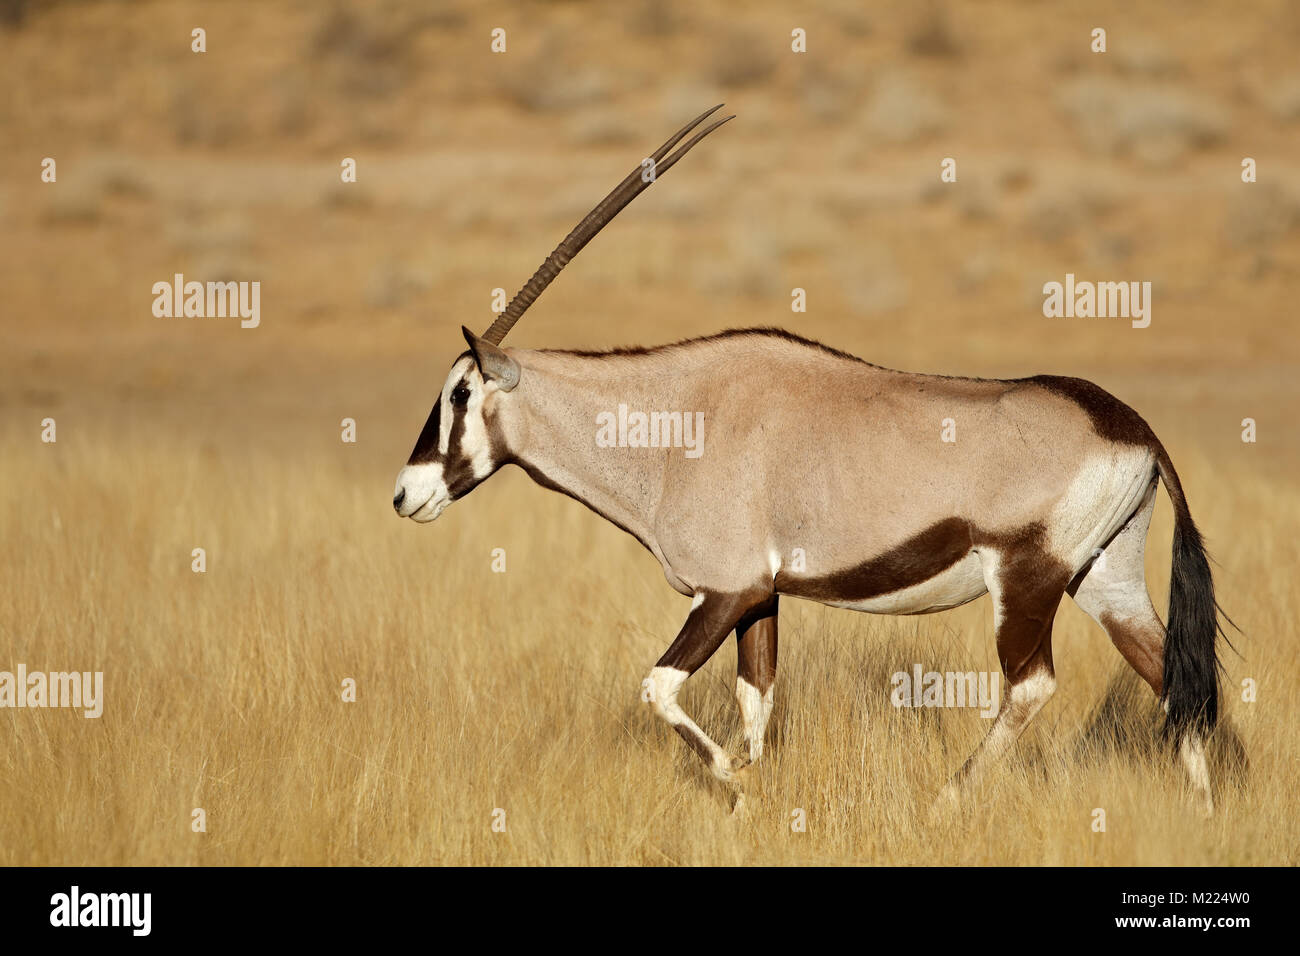 Antilope gemsbok (Oryx gazella) marche dans la prairie, désert du Kalahari, Afrique du Sud Banque D'Images